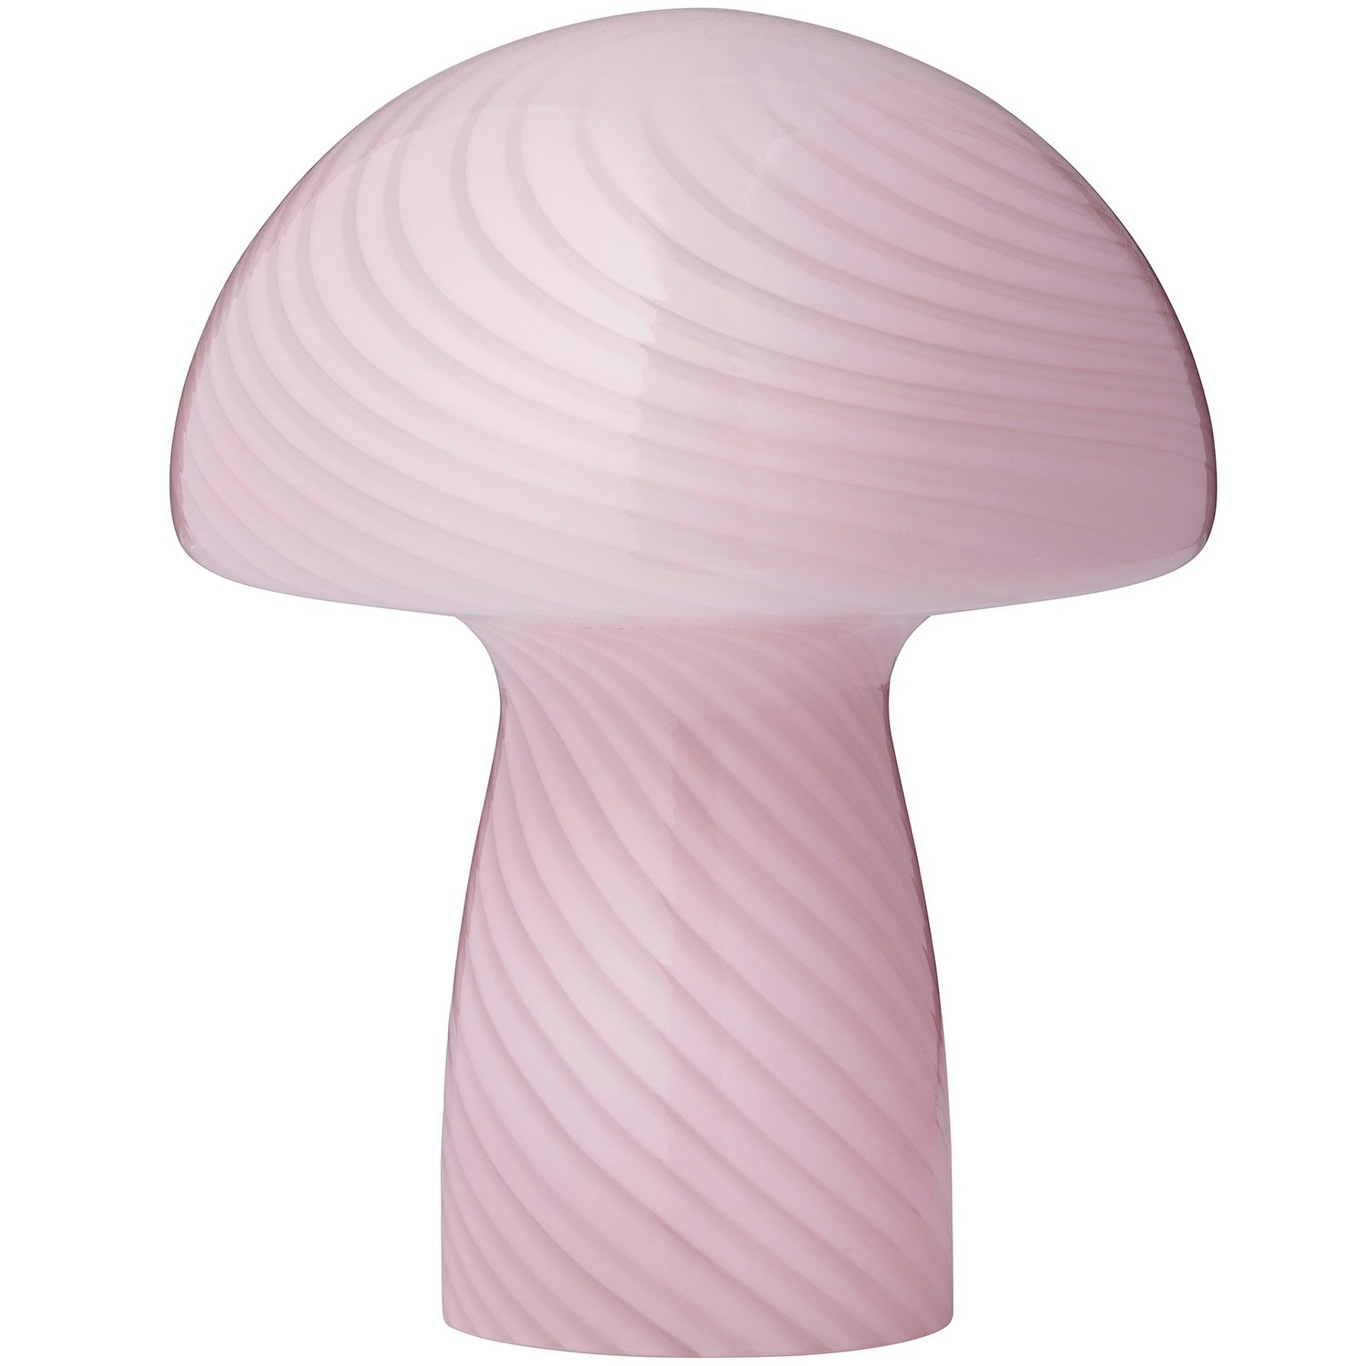 Mushroom Tafellamp 23 cm, Rose